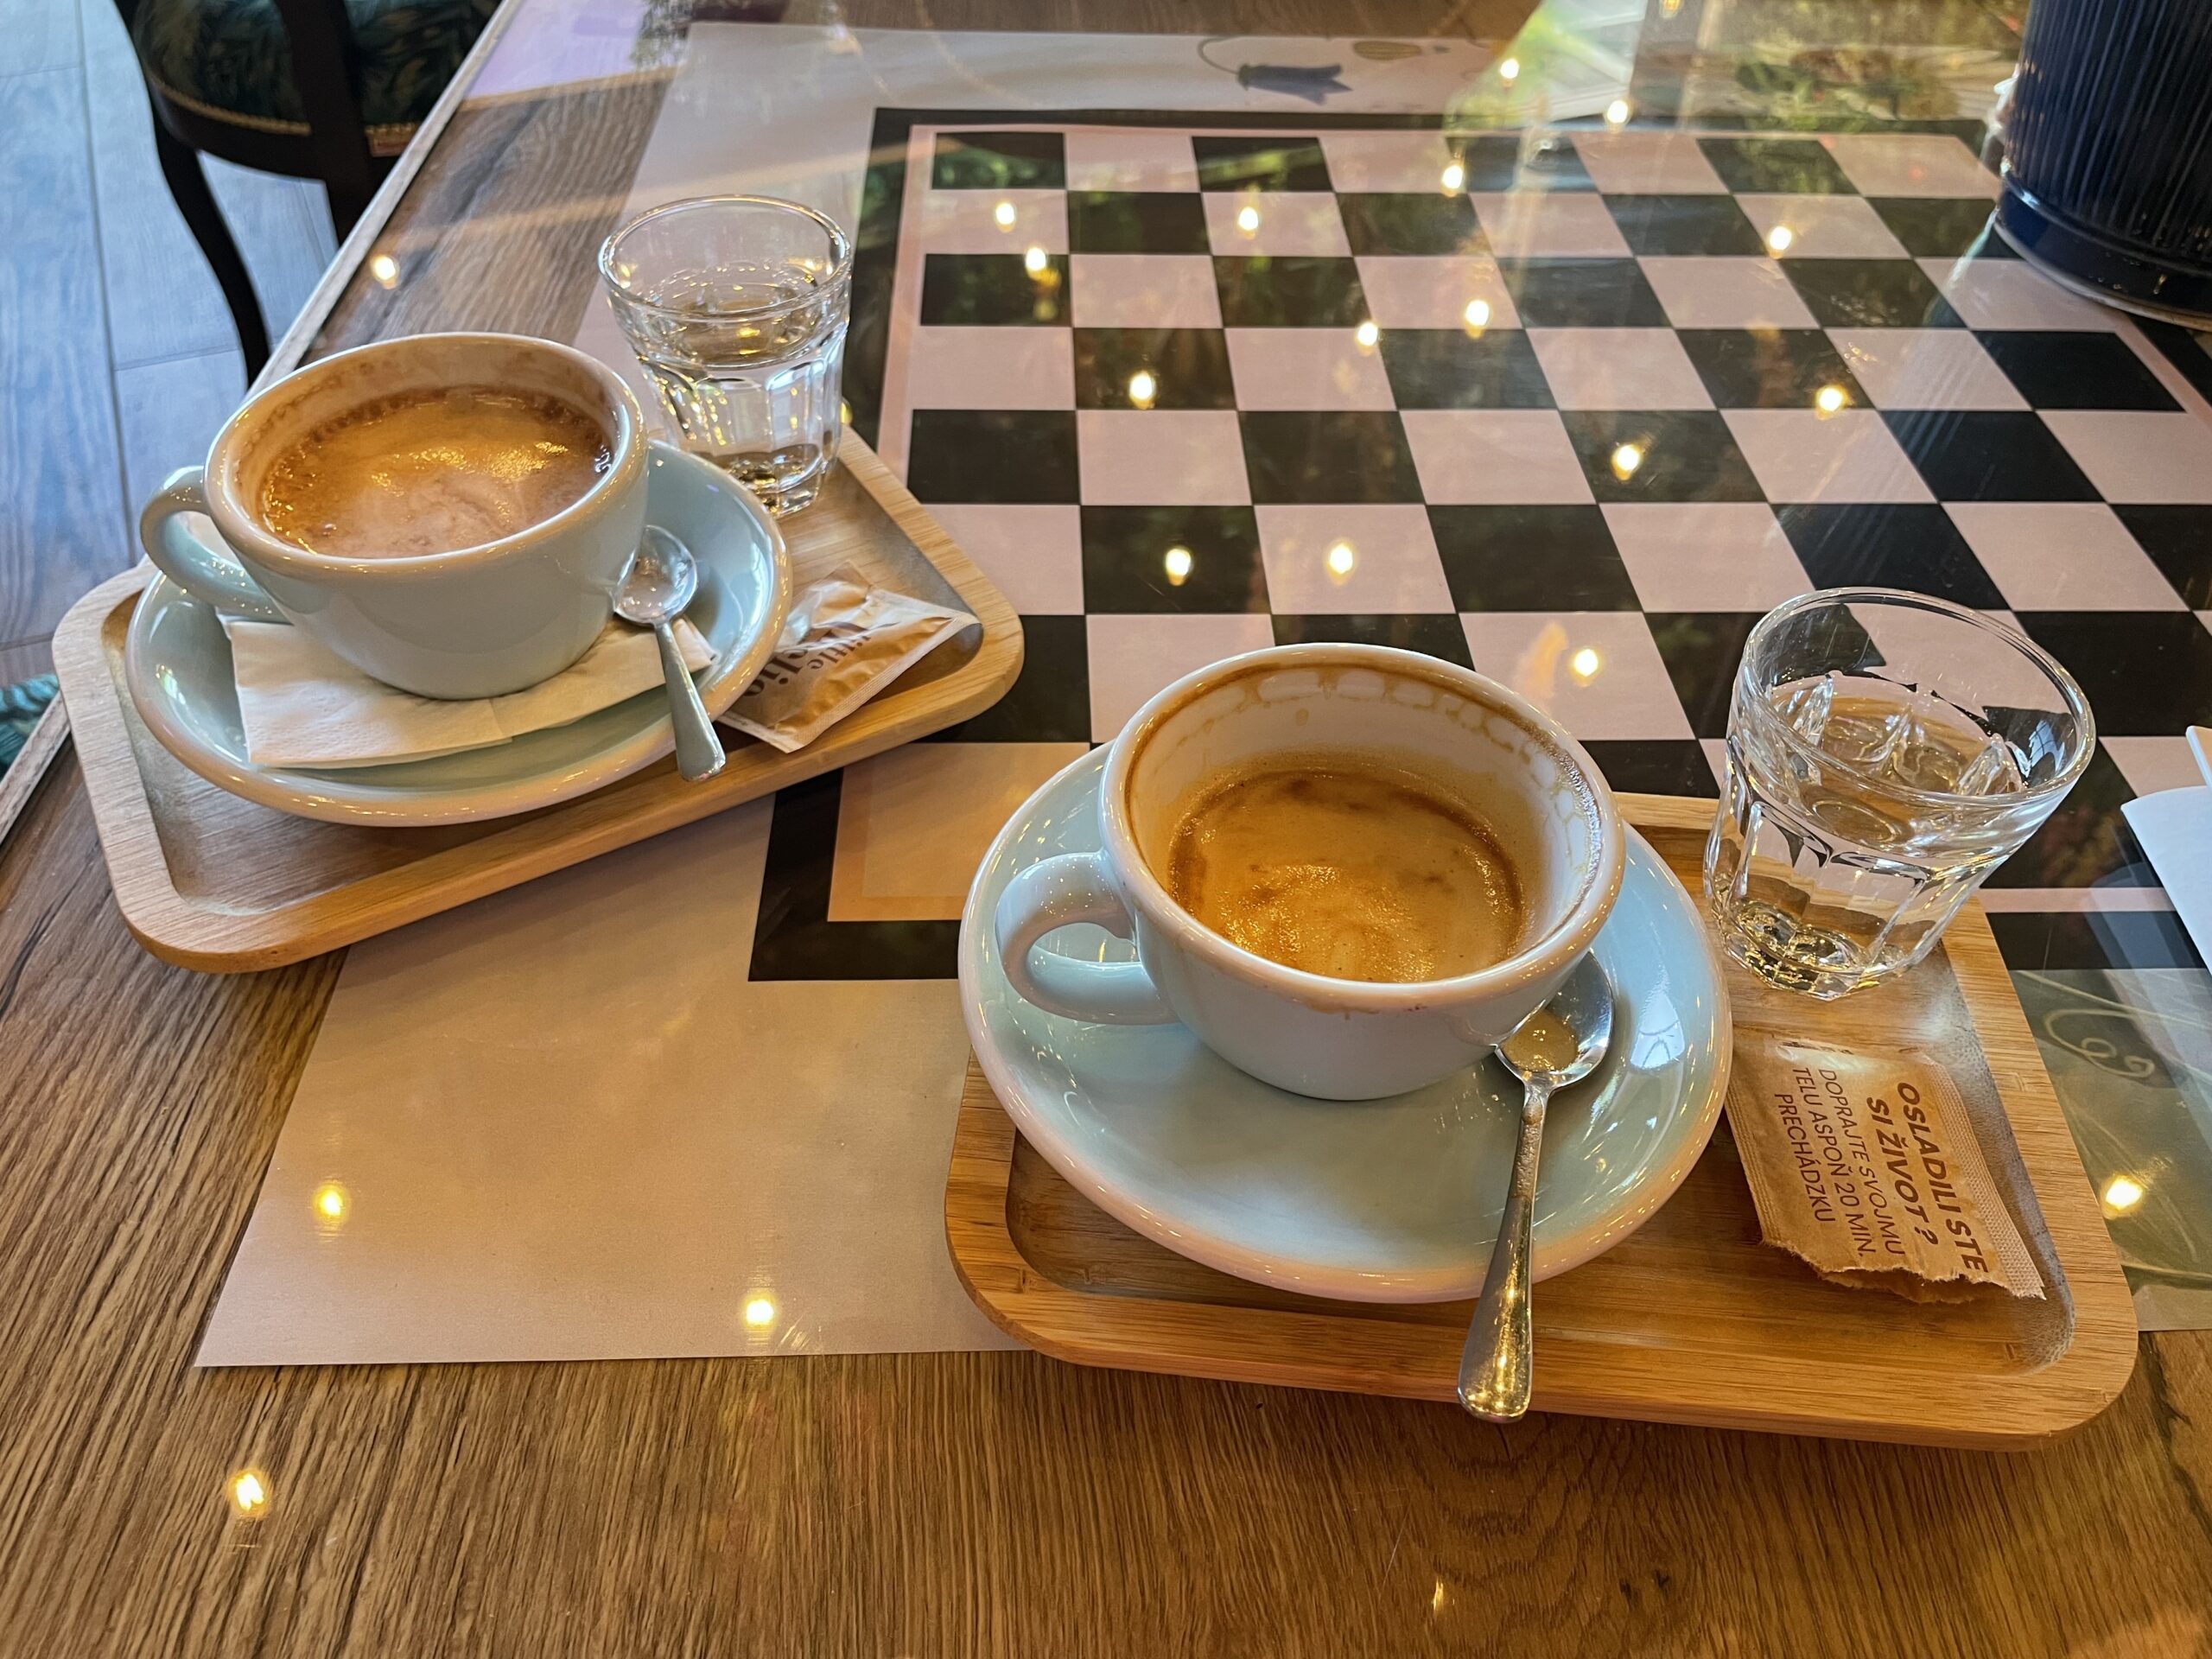 Dospelí si v kaviarni môžu zahrať napríklad šachy. Foto: Miroslava Pavlíková 